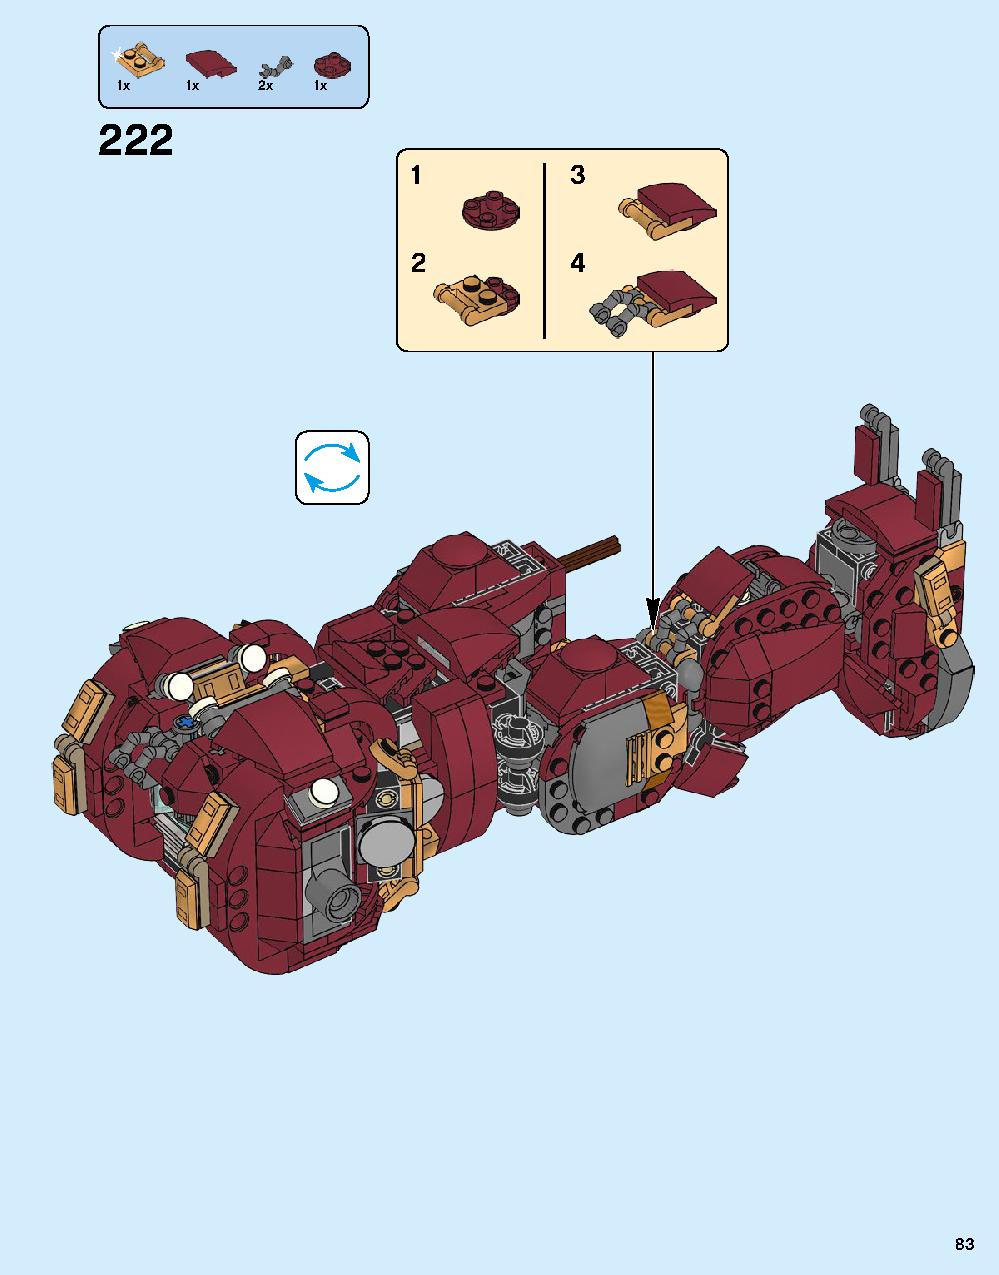 ハルクバスター：ウルトロン・エディション 76105 レゴの商品情報 レゴの説明書・組立方法 83 page